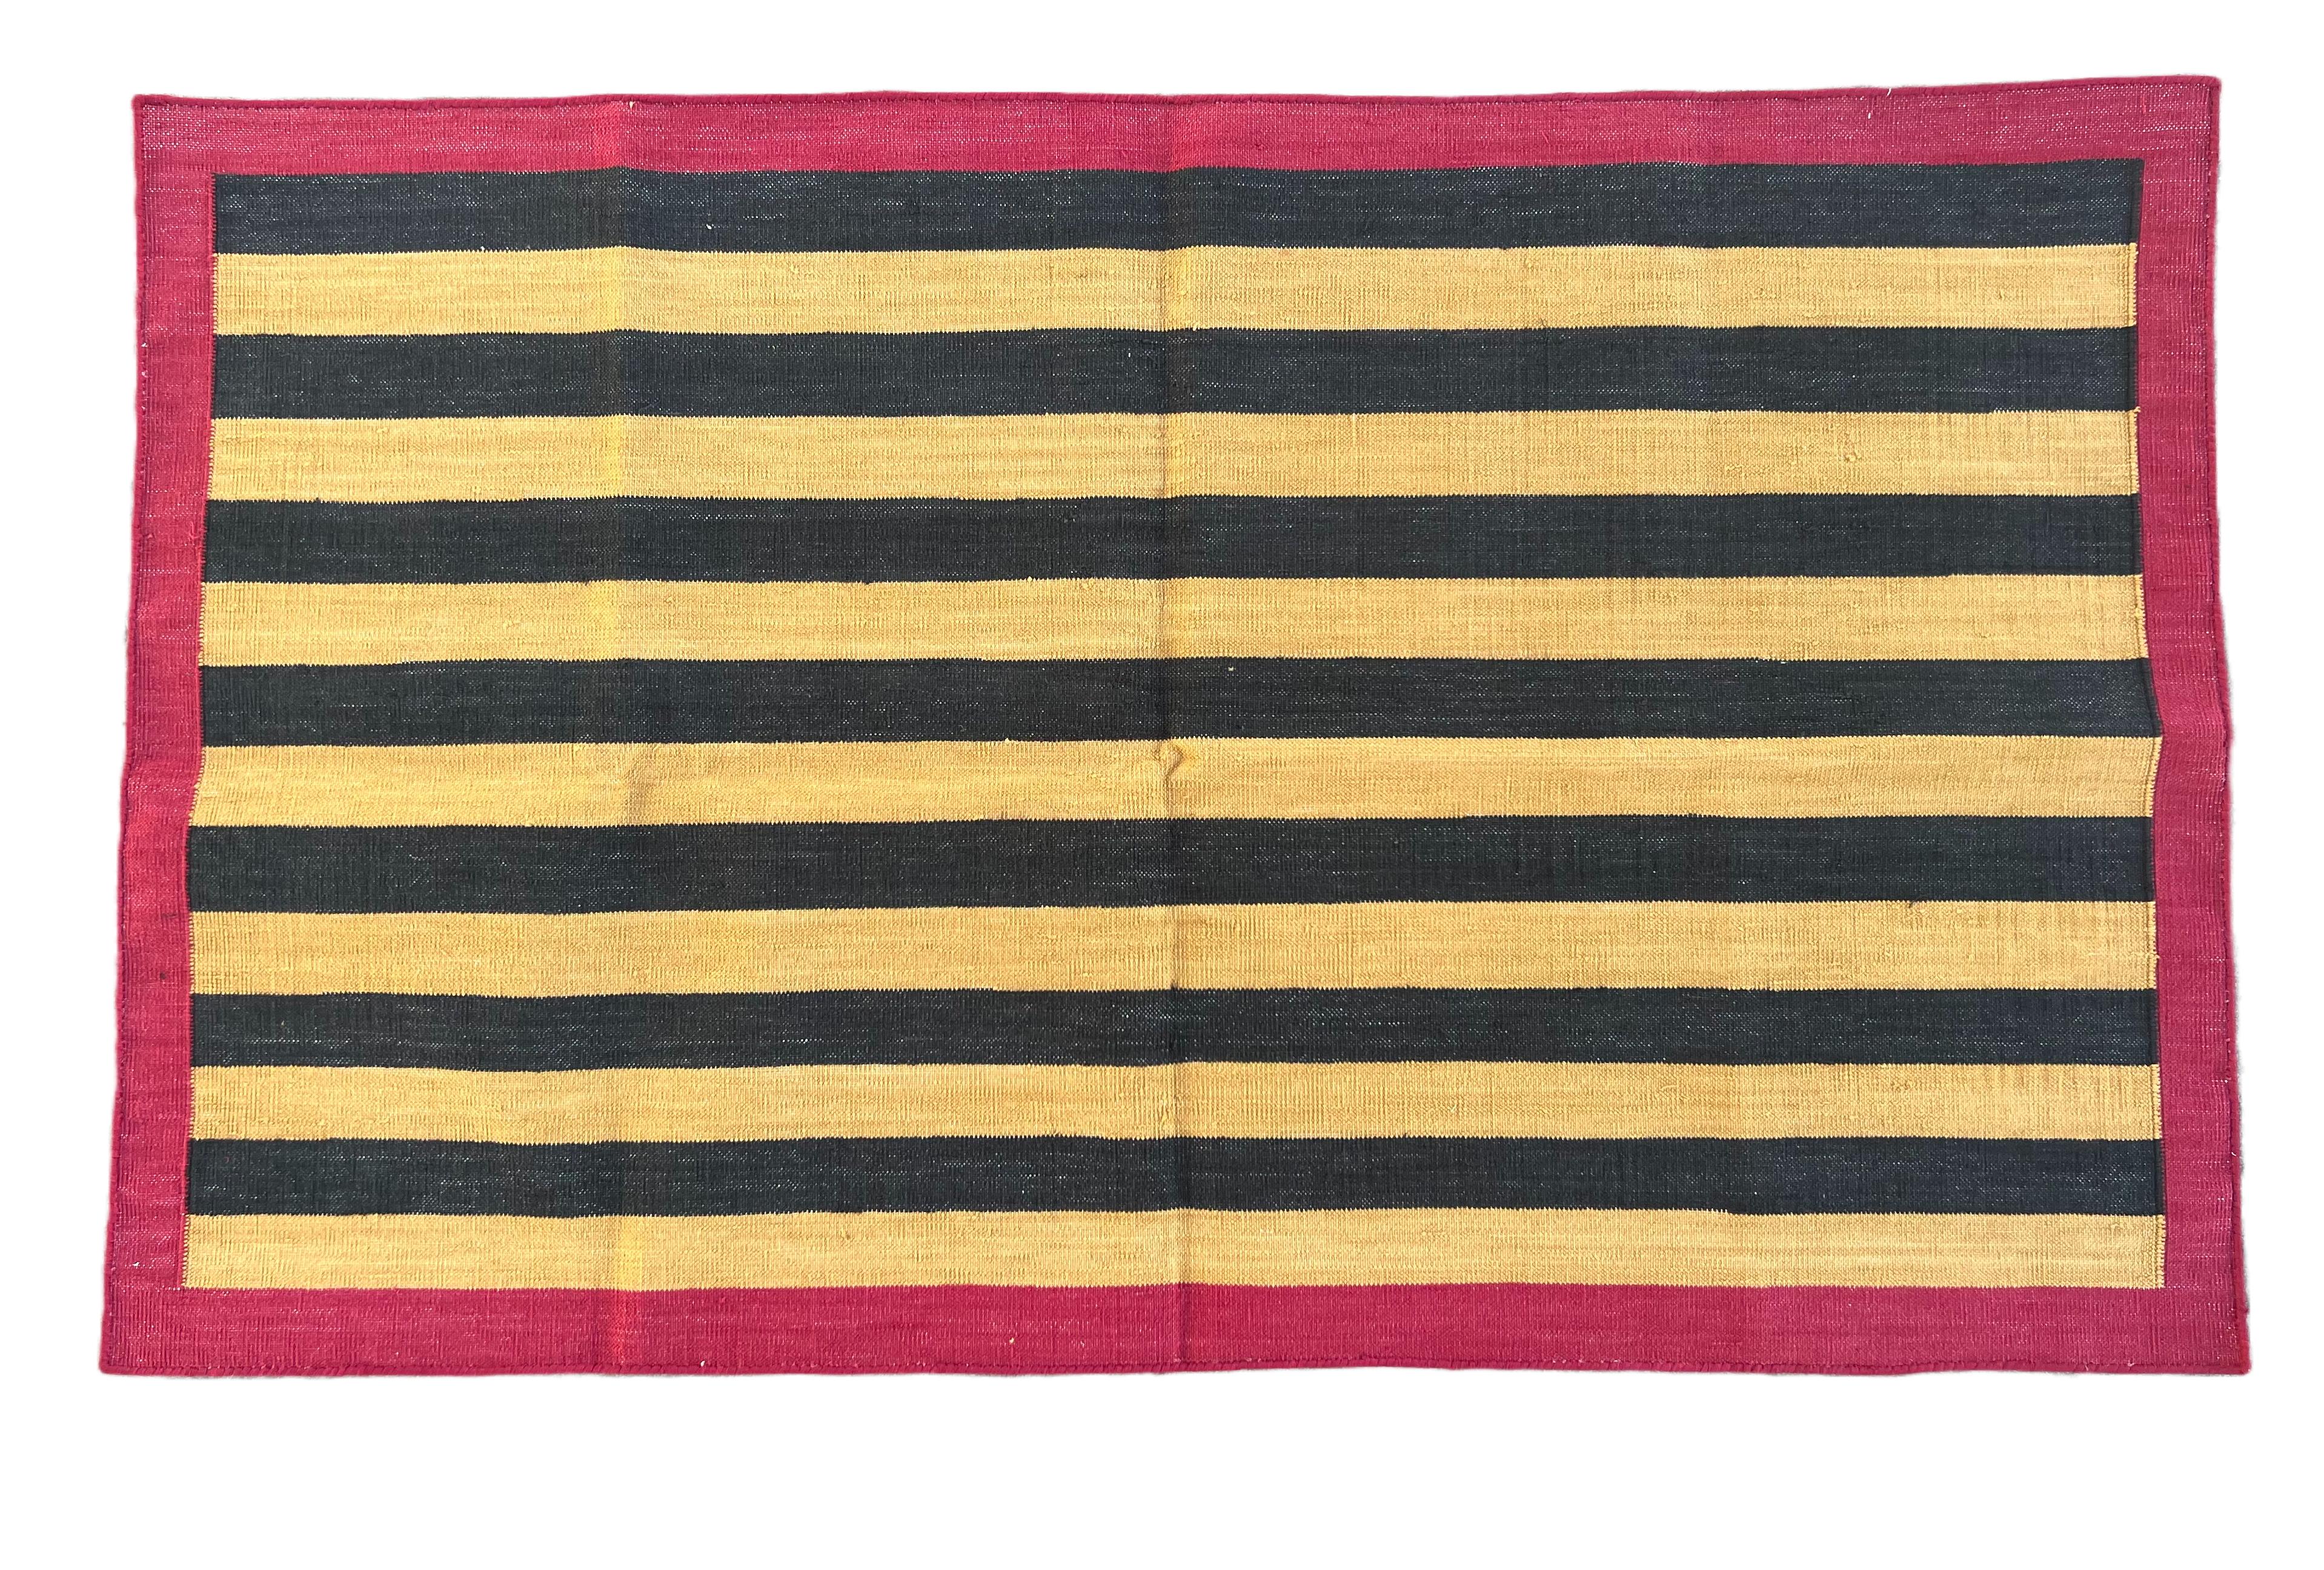 Gelb, schwarz und rot gestreifter indischer Dhurrie-Teppich aus pflanzlich gefärbter Baumwolle - 2.5'x4' 
Diese speziellen flachgewebten Dhurries werden aus 15-fachem Garn aus 100% Baumwolle handgewebt. Aufgrund der speziellen Fertigungstechniken,